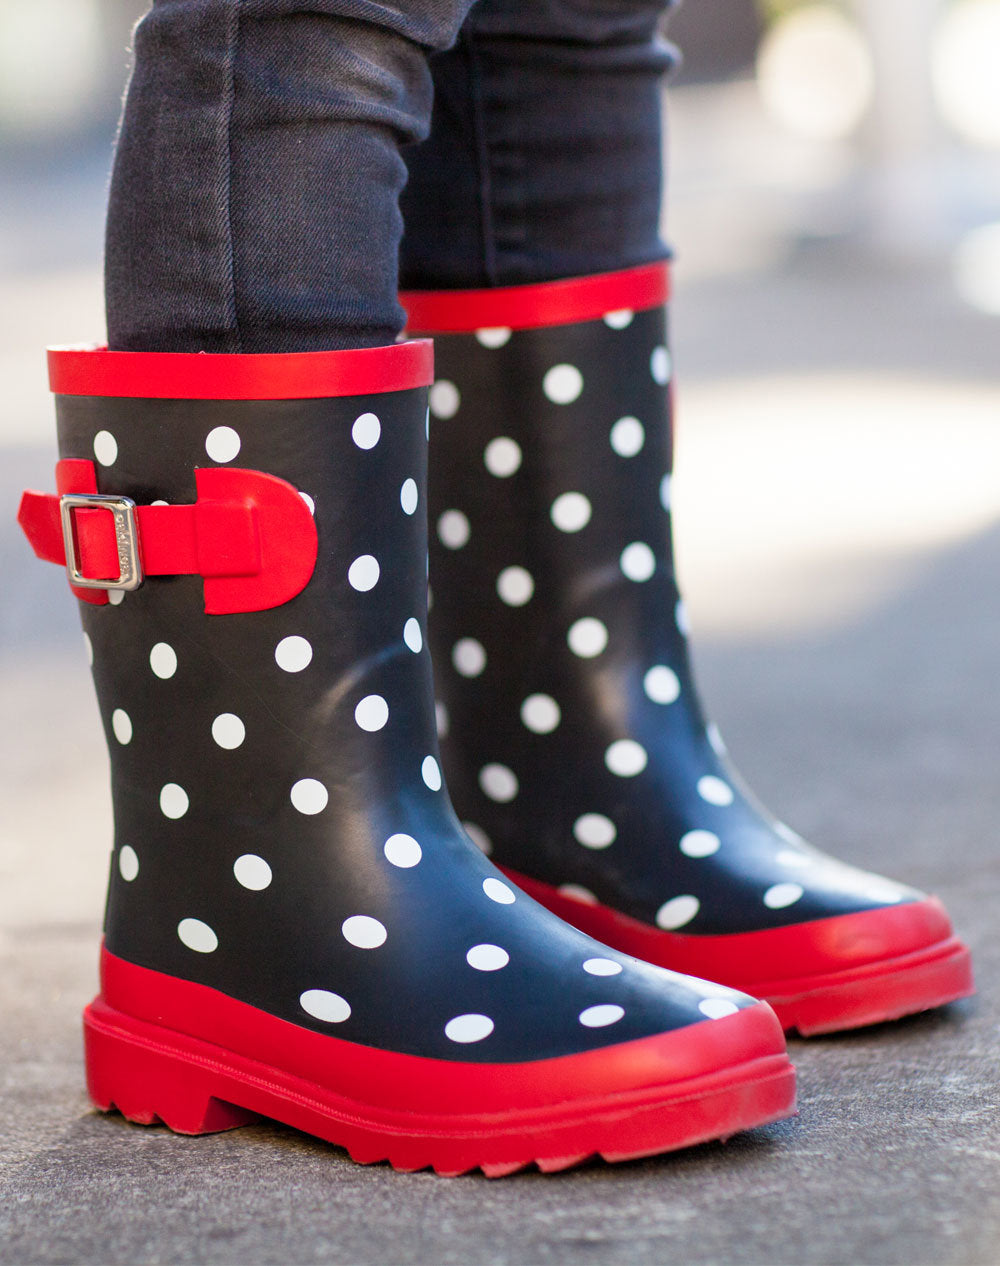 black and white polka dot rain boots